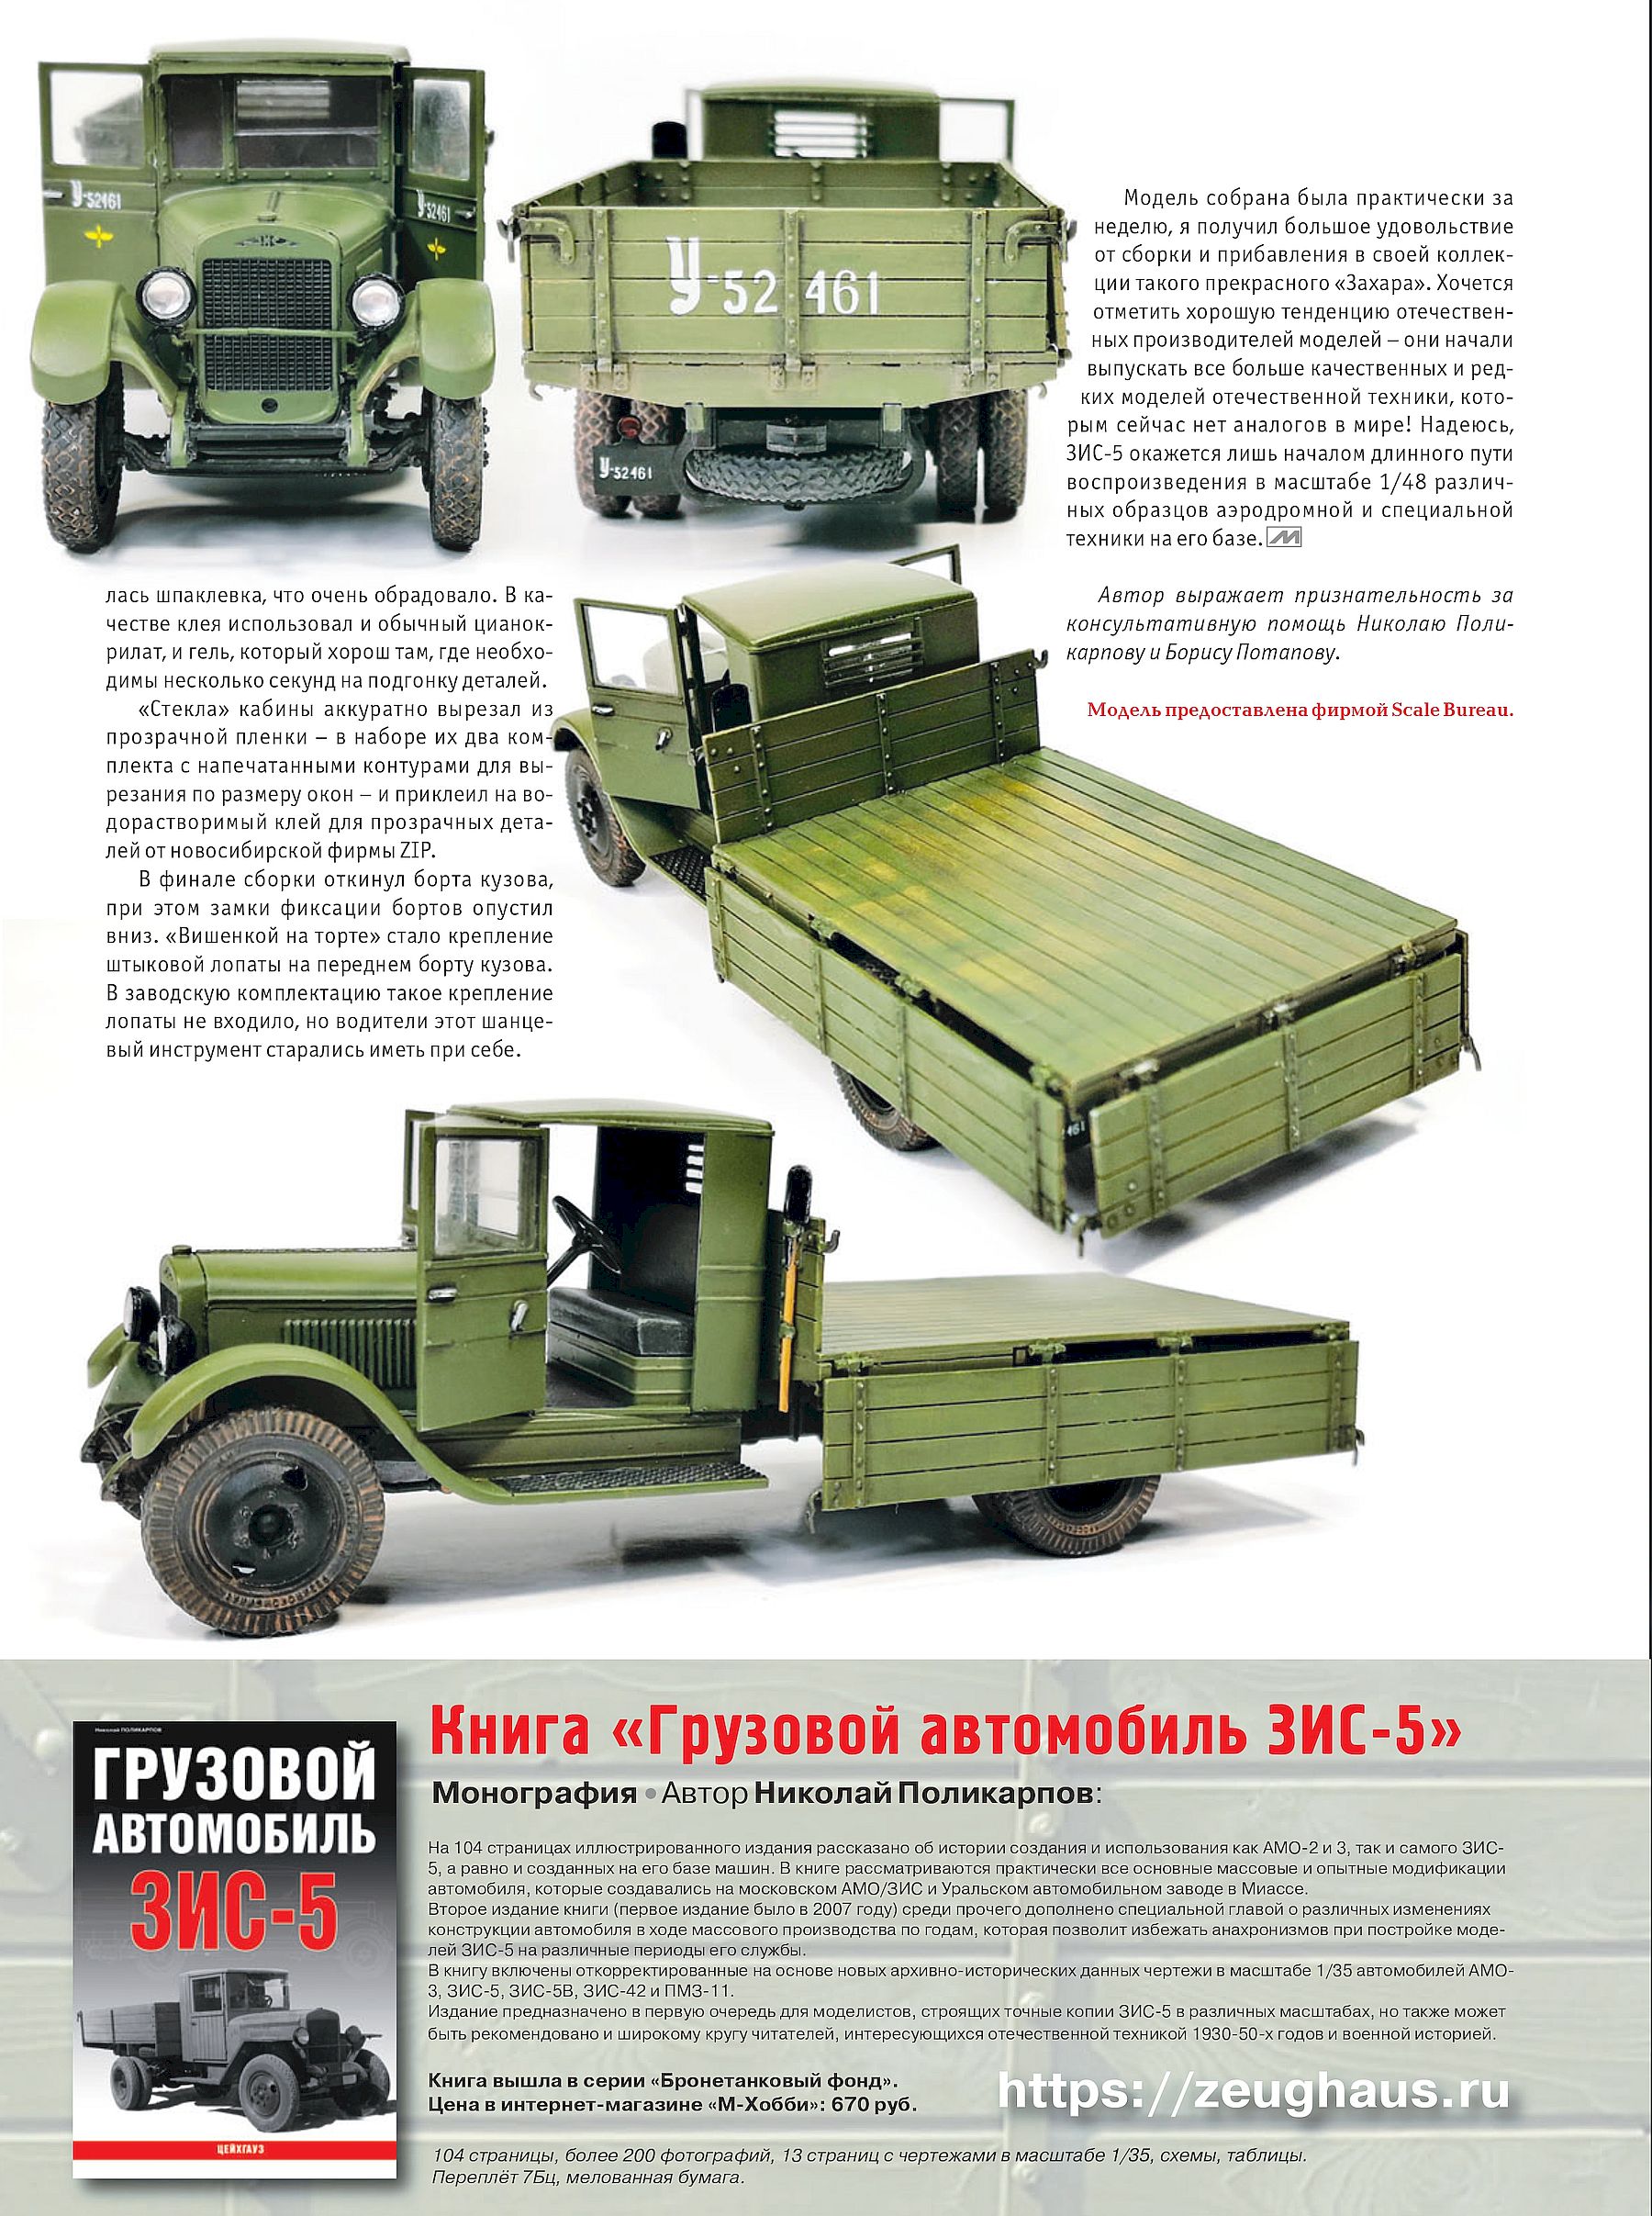 Советский грузовой автомобиль ЗИС-5 от компании Scale Bureau